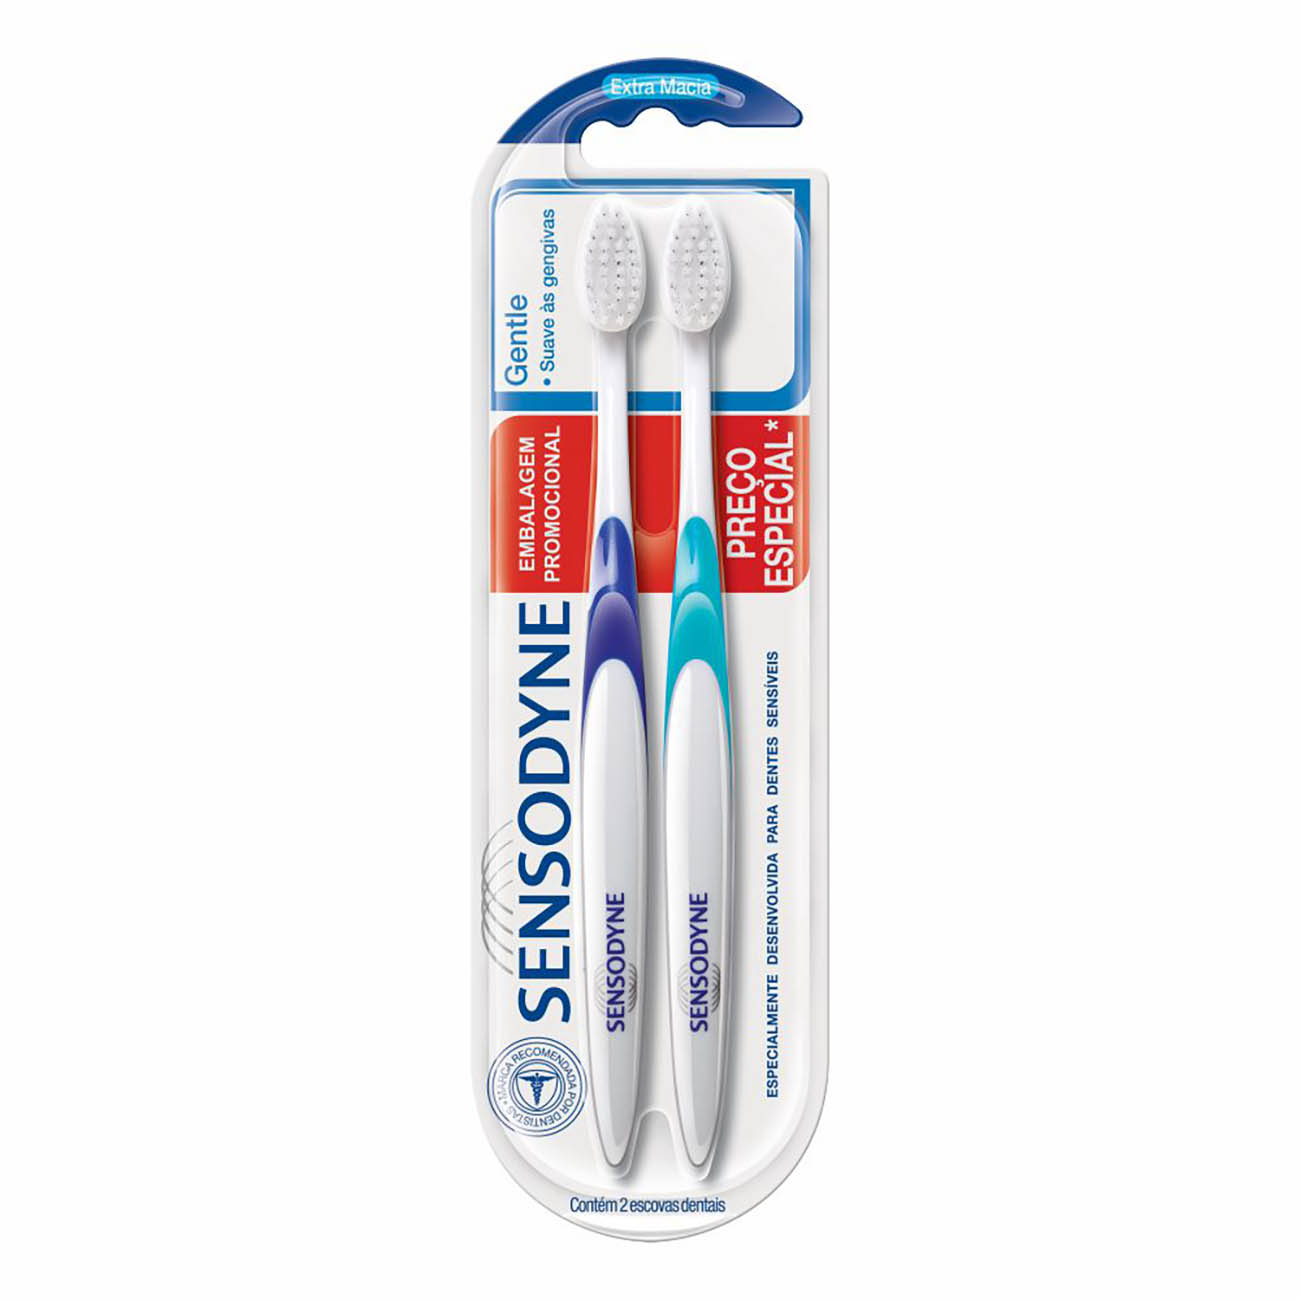 Kit Promocional Sensodyne Gentle com duas Escovas Dentais para Dentes Sensveis